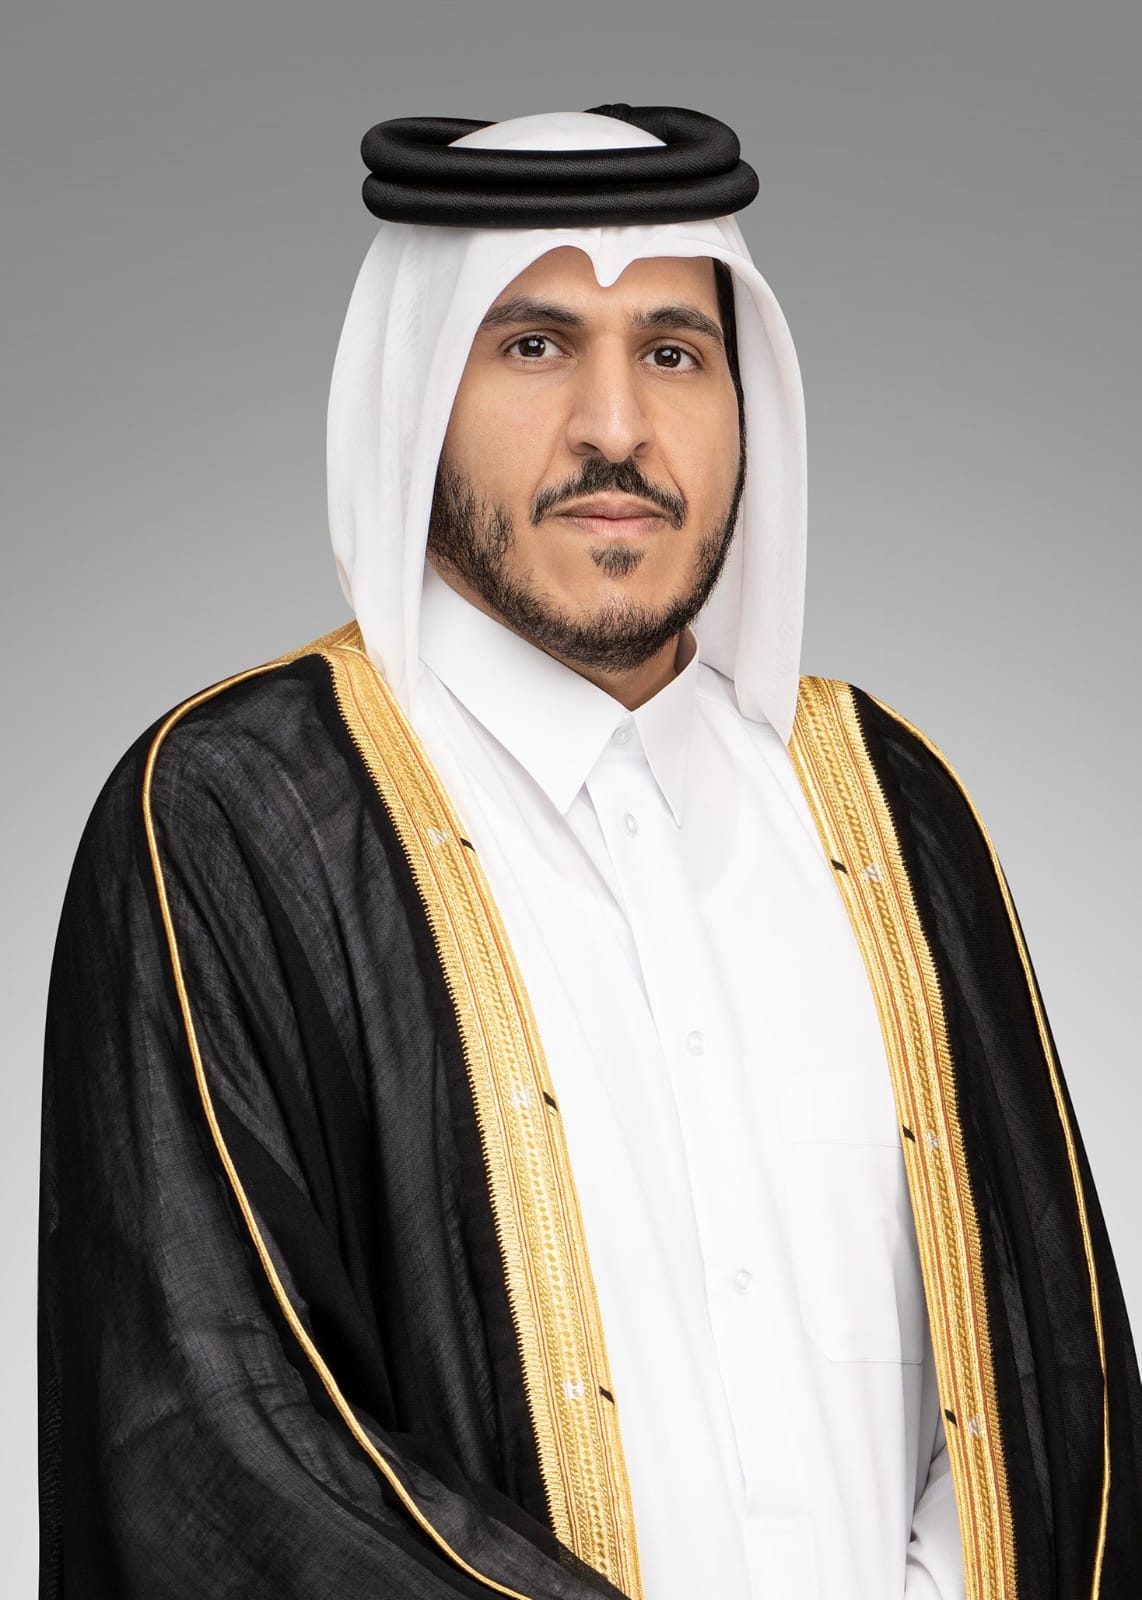 H.E. Sheikh Mohamed Bin Hamad Bin Qassim Al Thani